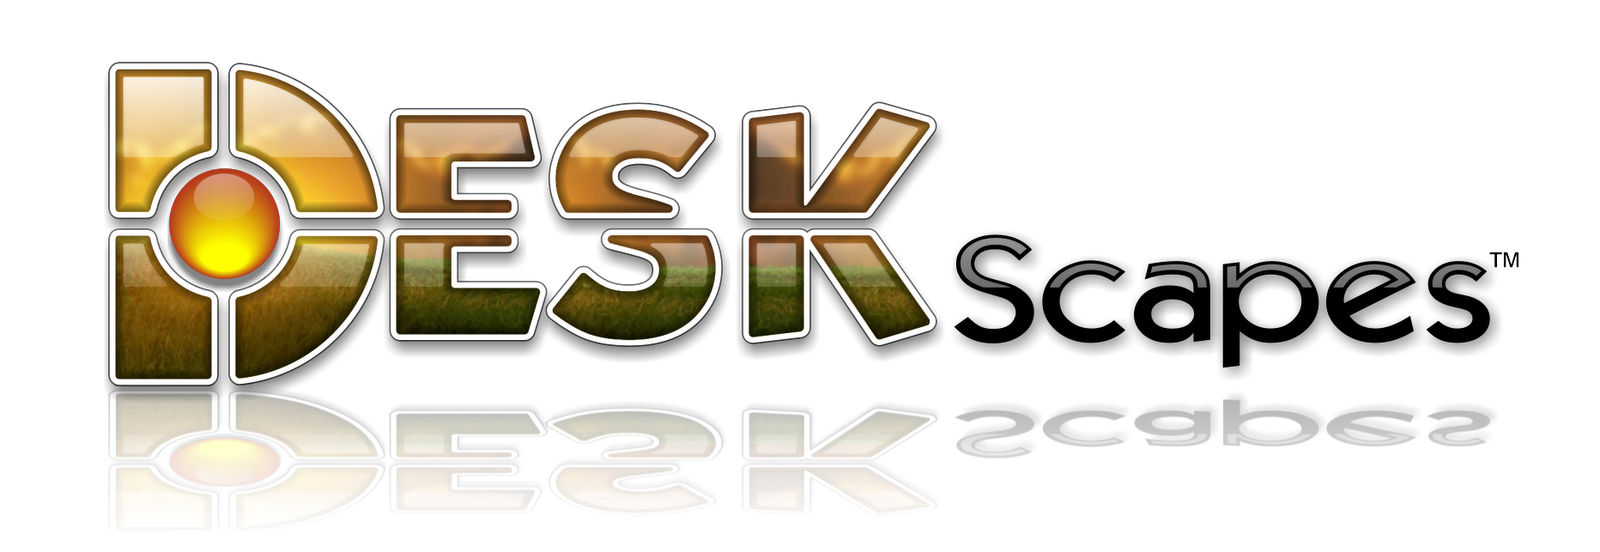 Stardock DeskScapes™ 3.5 Full Version Free Download+X ...